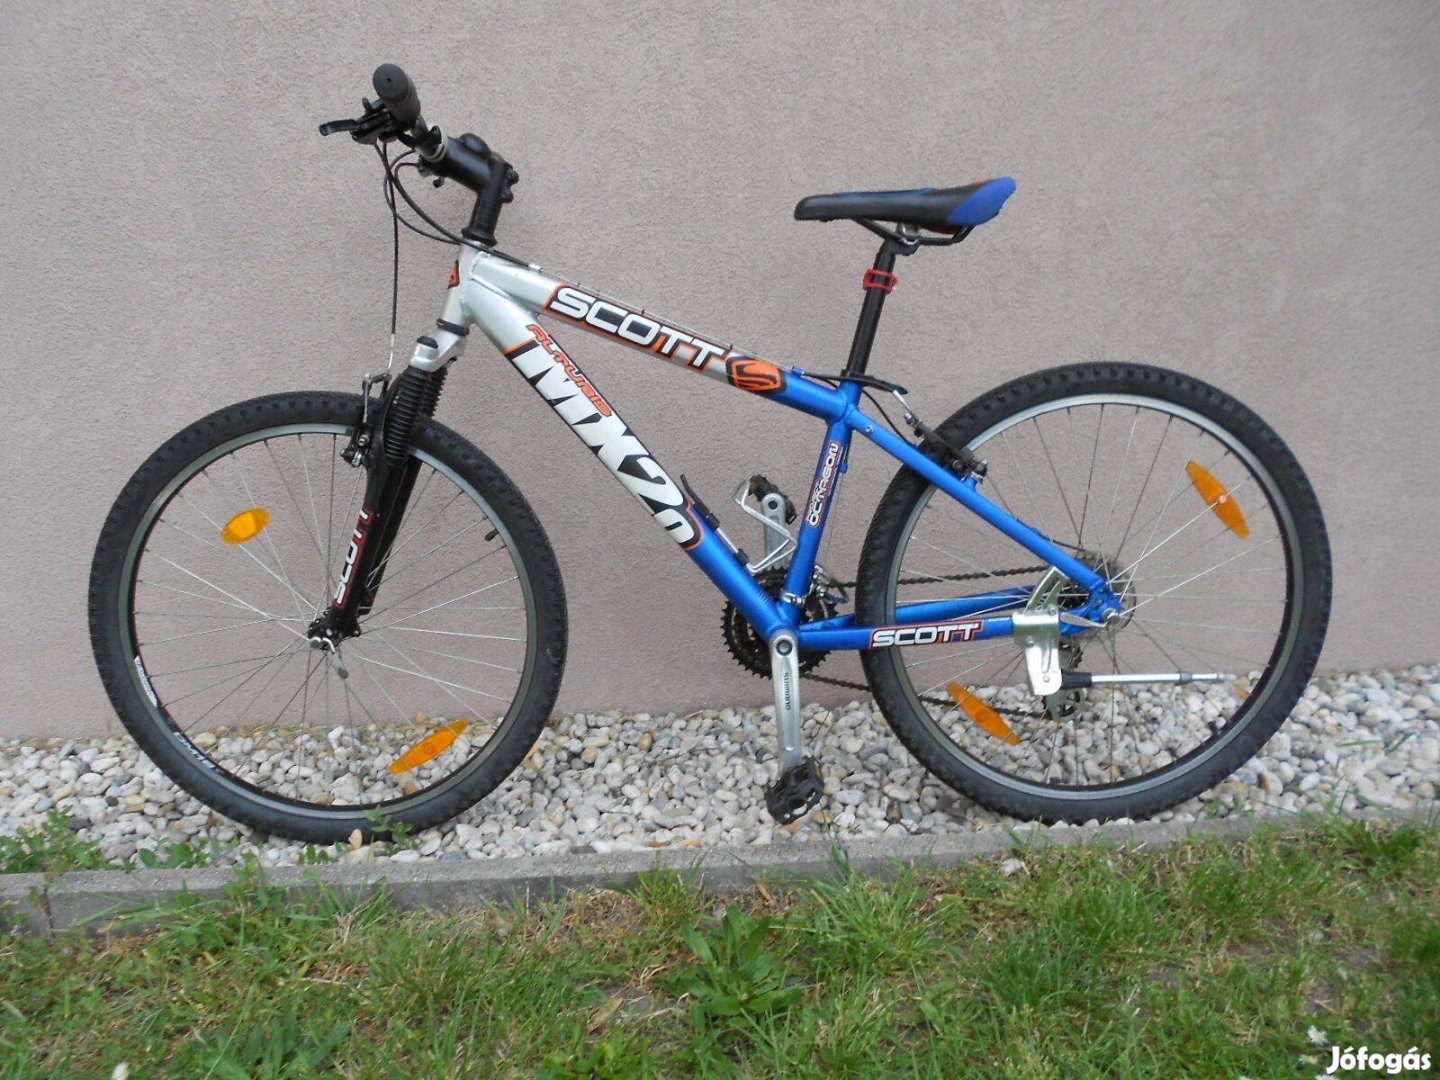 Scott 26" mountain bike